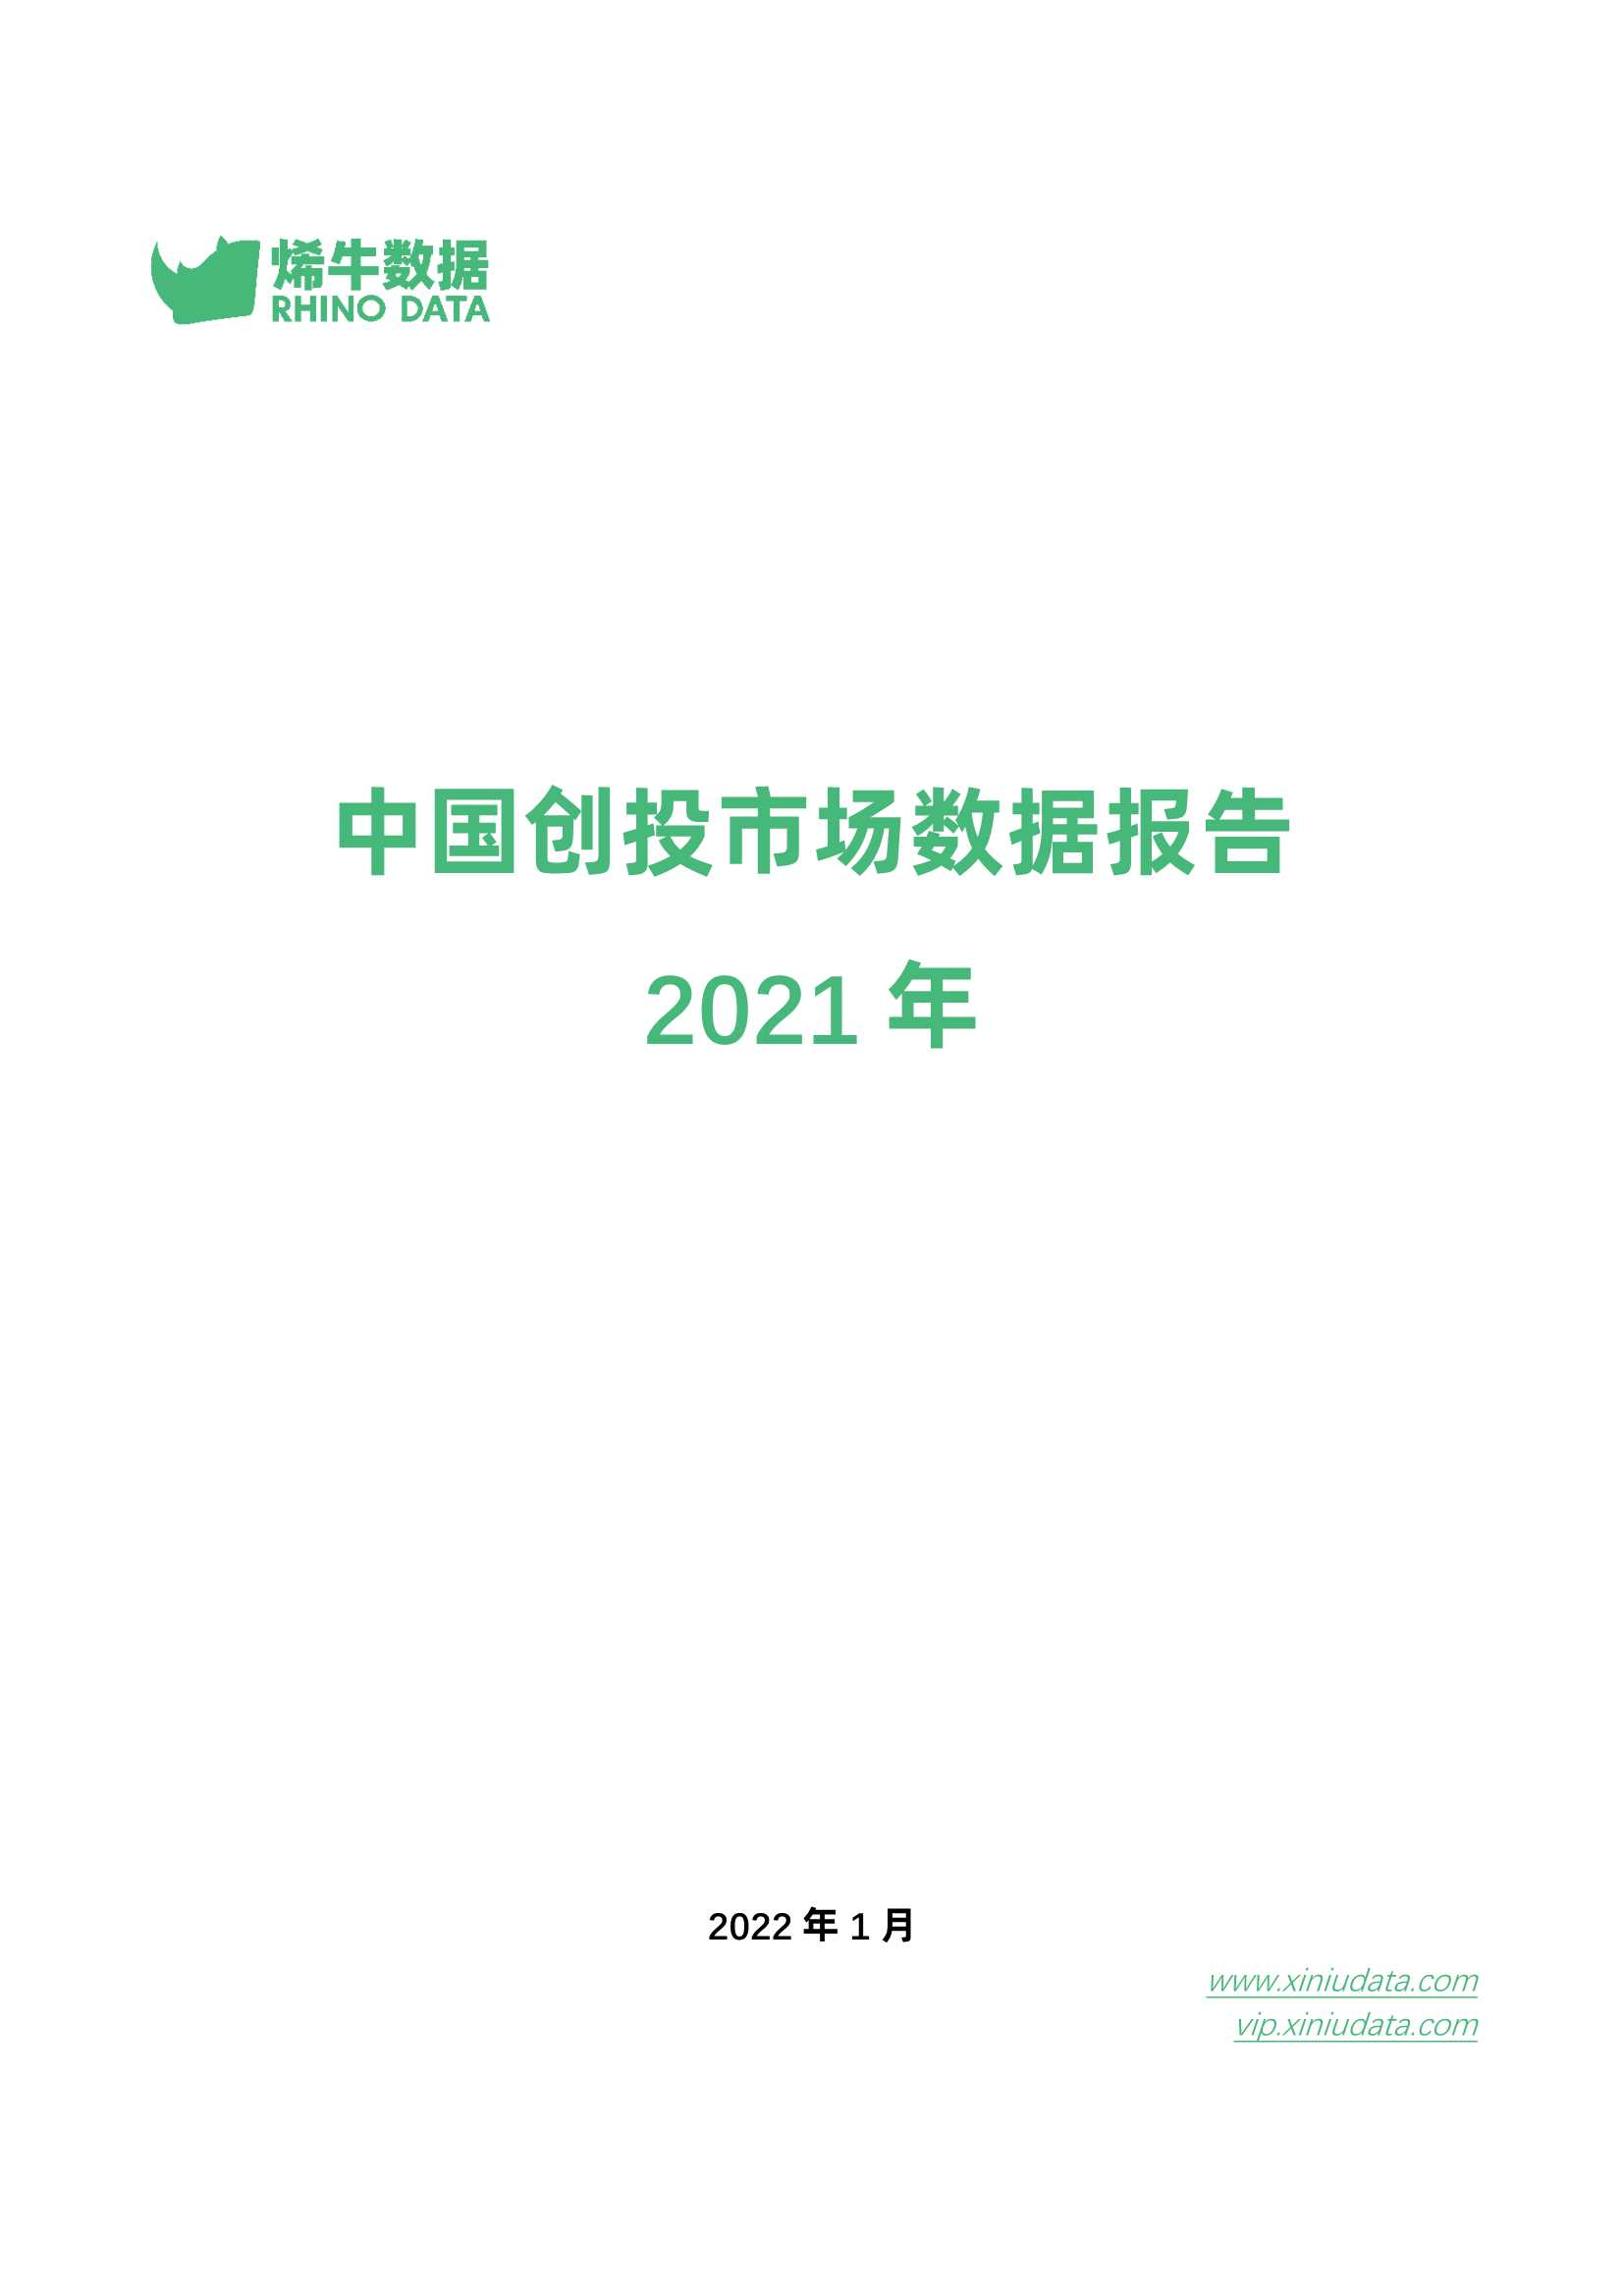 烯牛数据-2021年中国创投市场数据报告-2022.02-38页